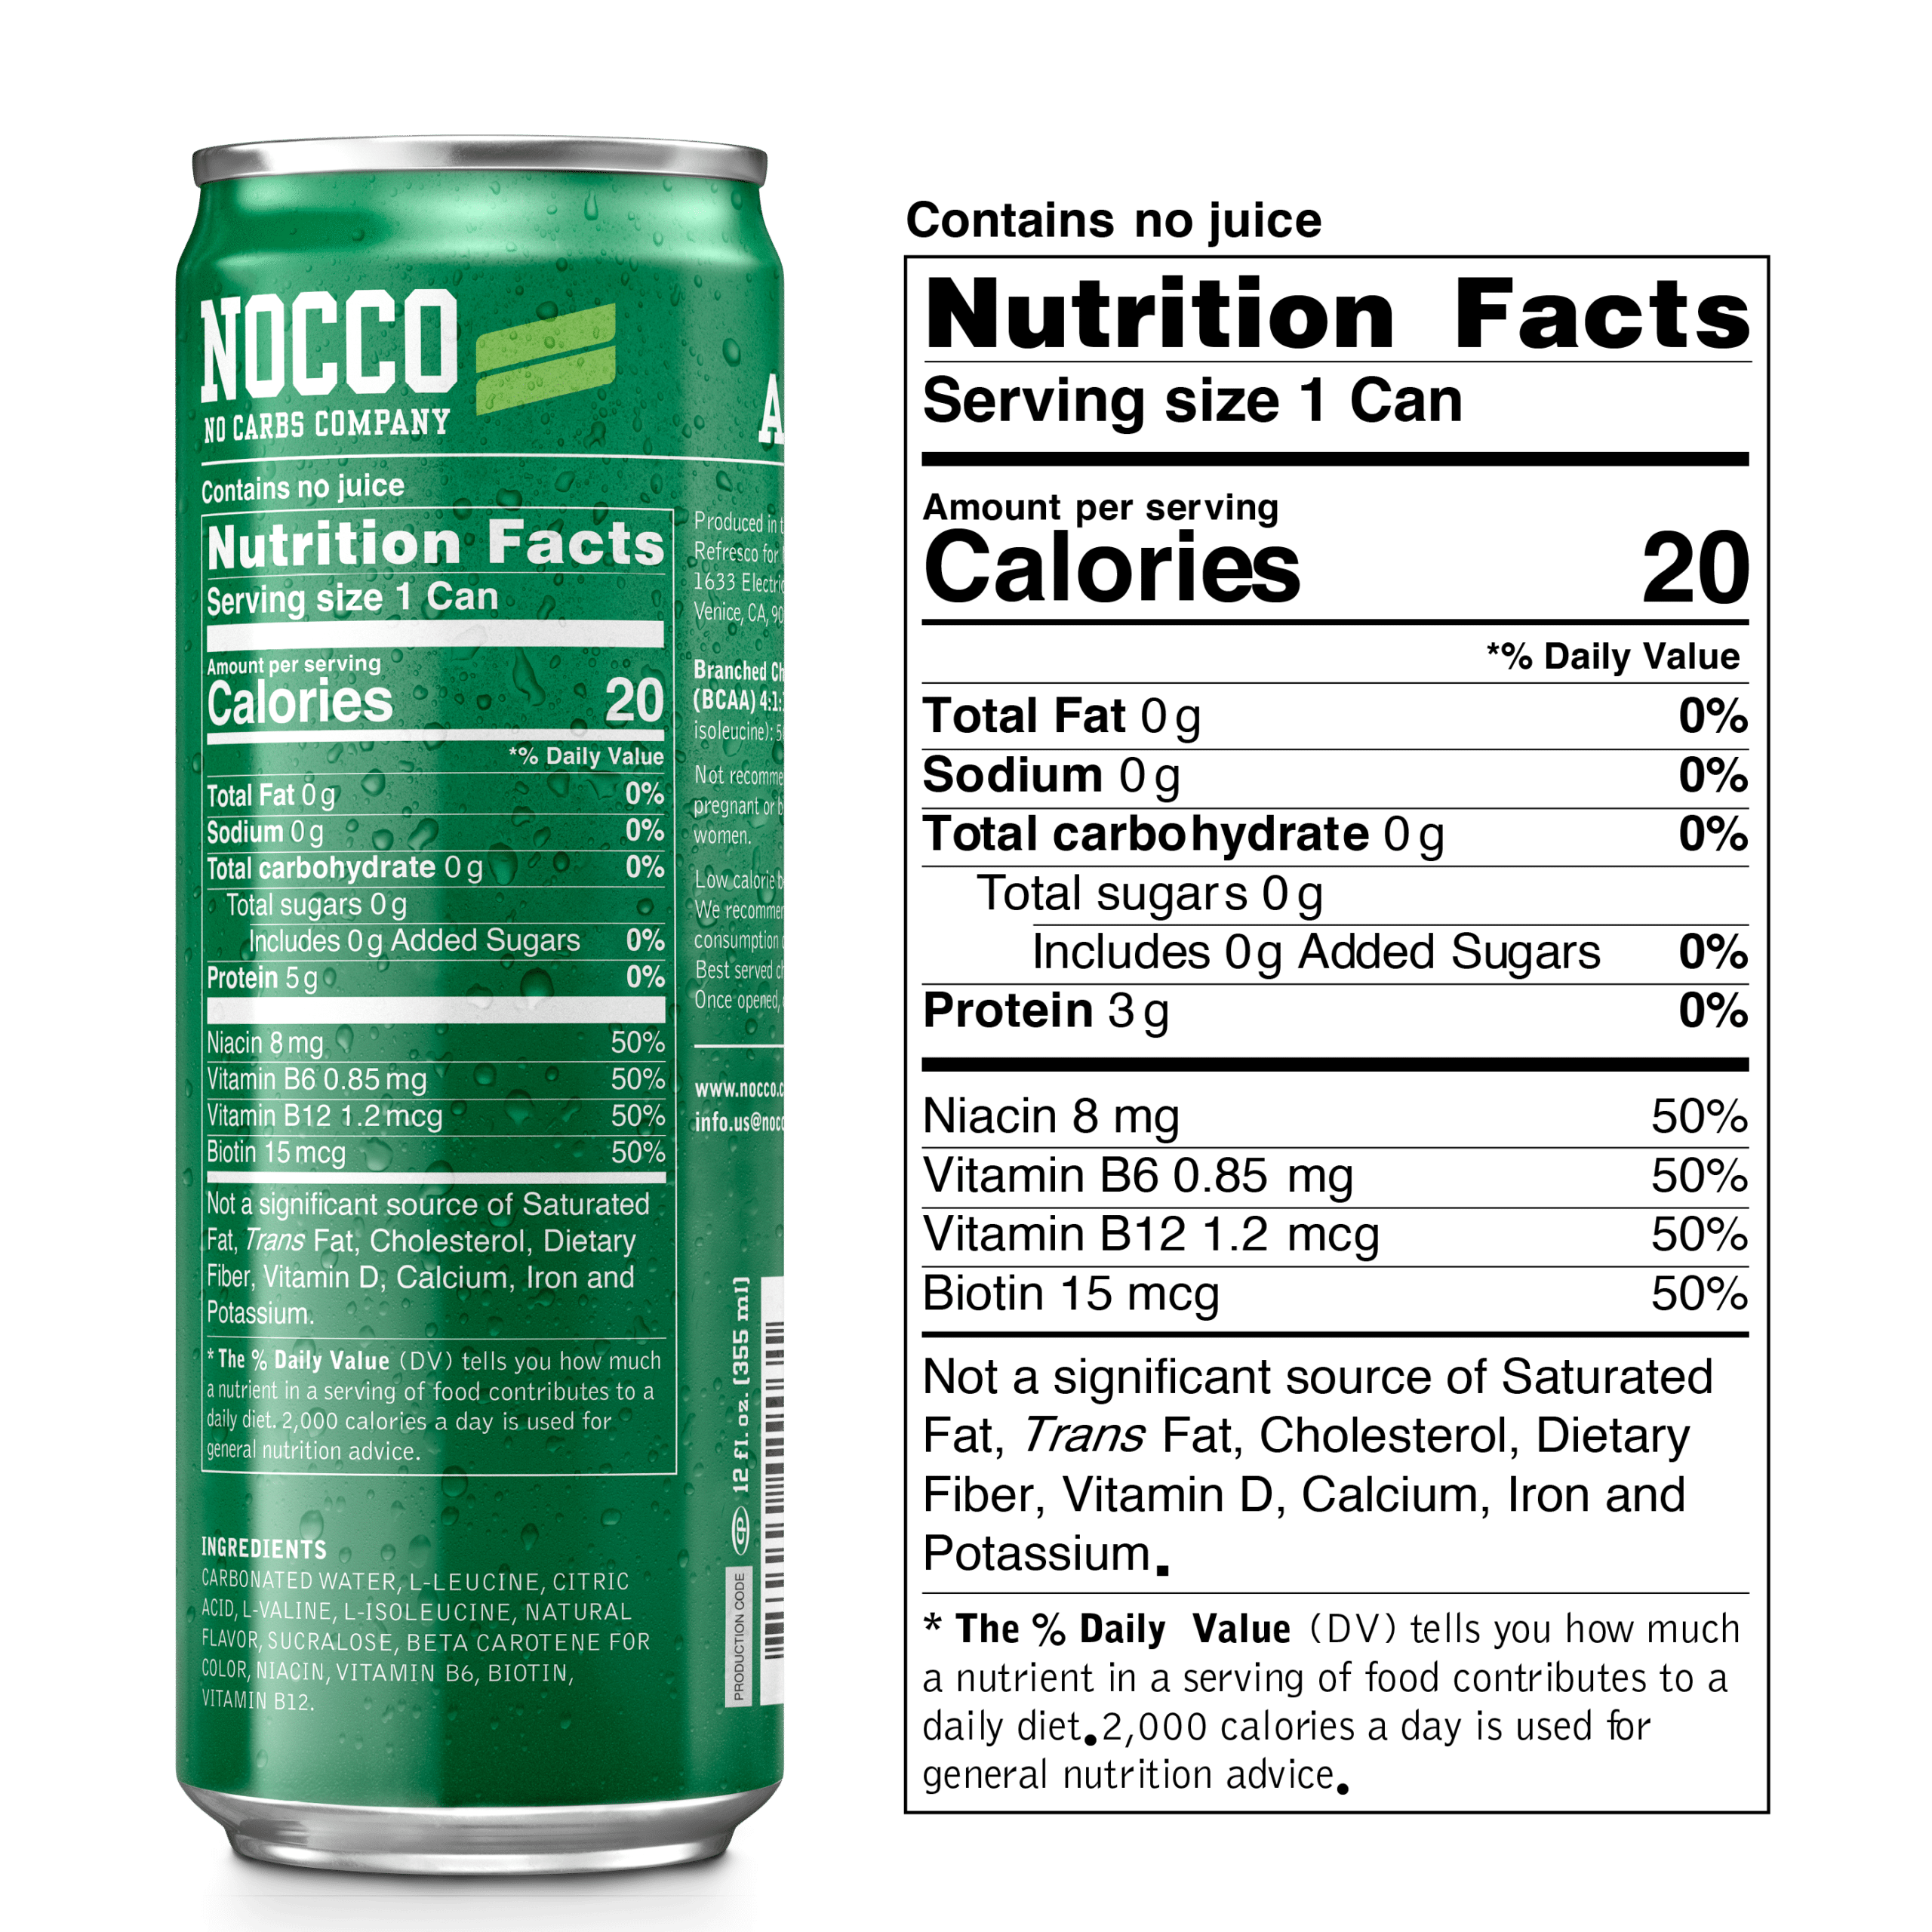 NOCCO Caffeine-free Carribbean, 2020-08-17